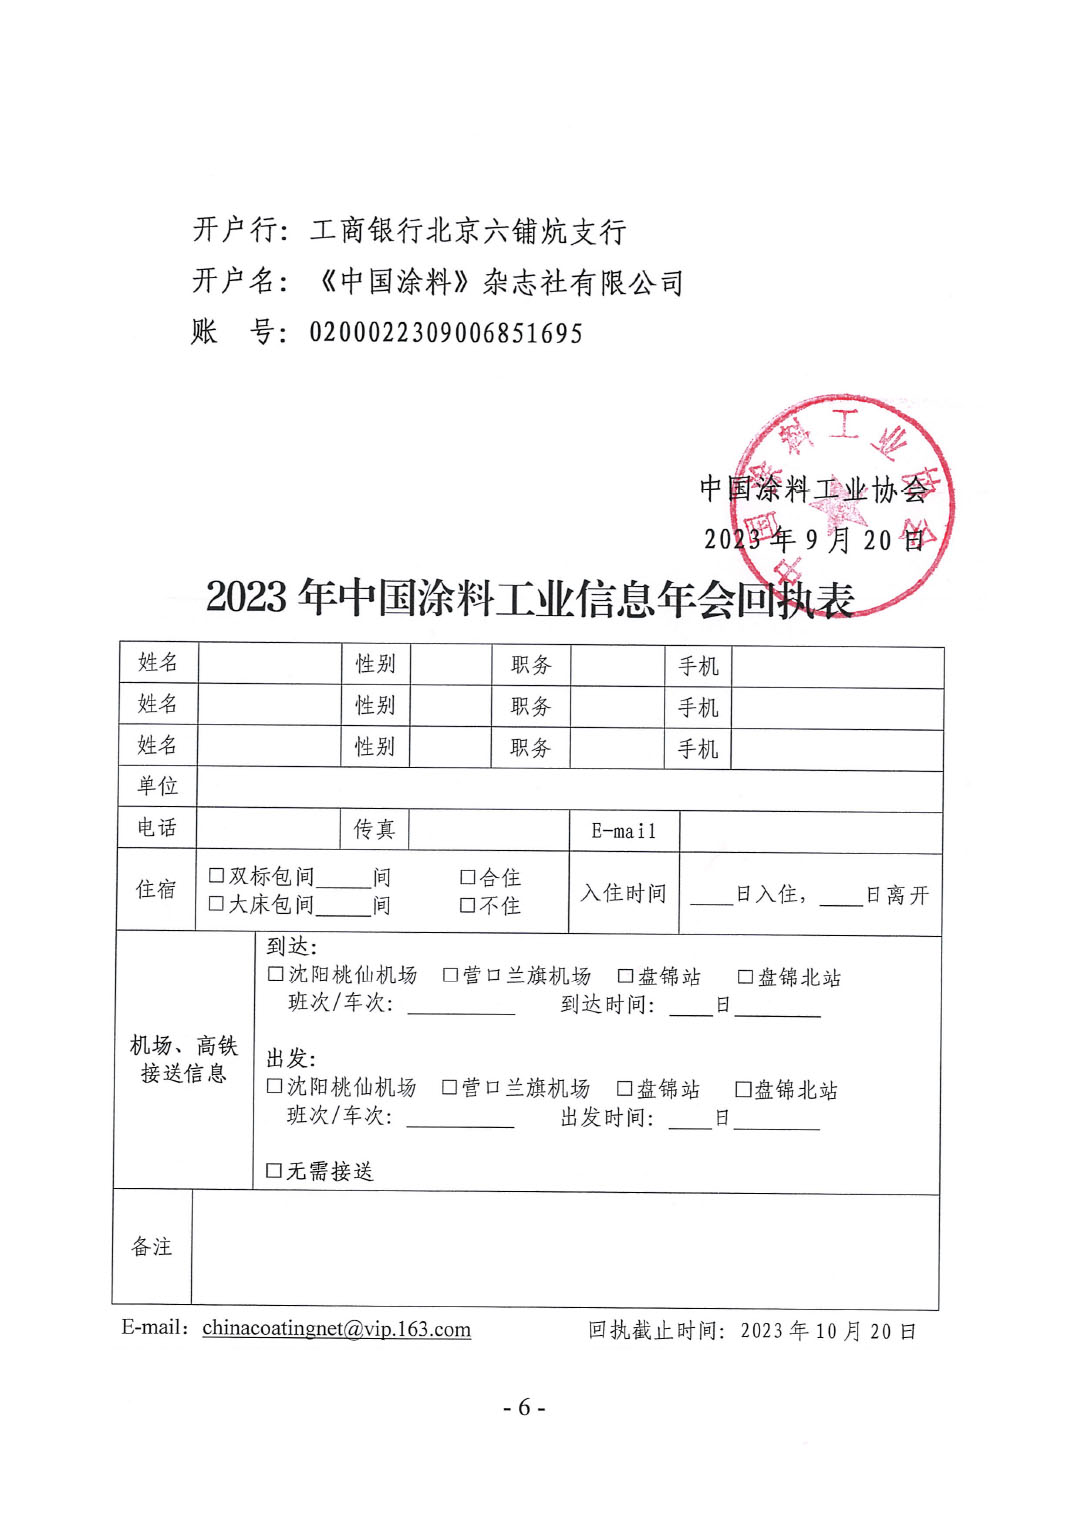 2023年中国涂料工业信息年会通知（发文版）0921-6